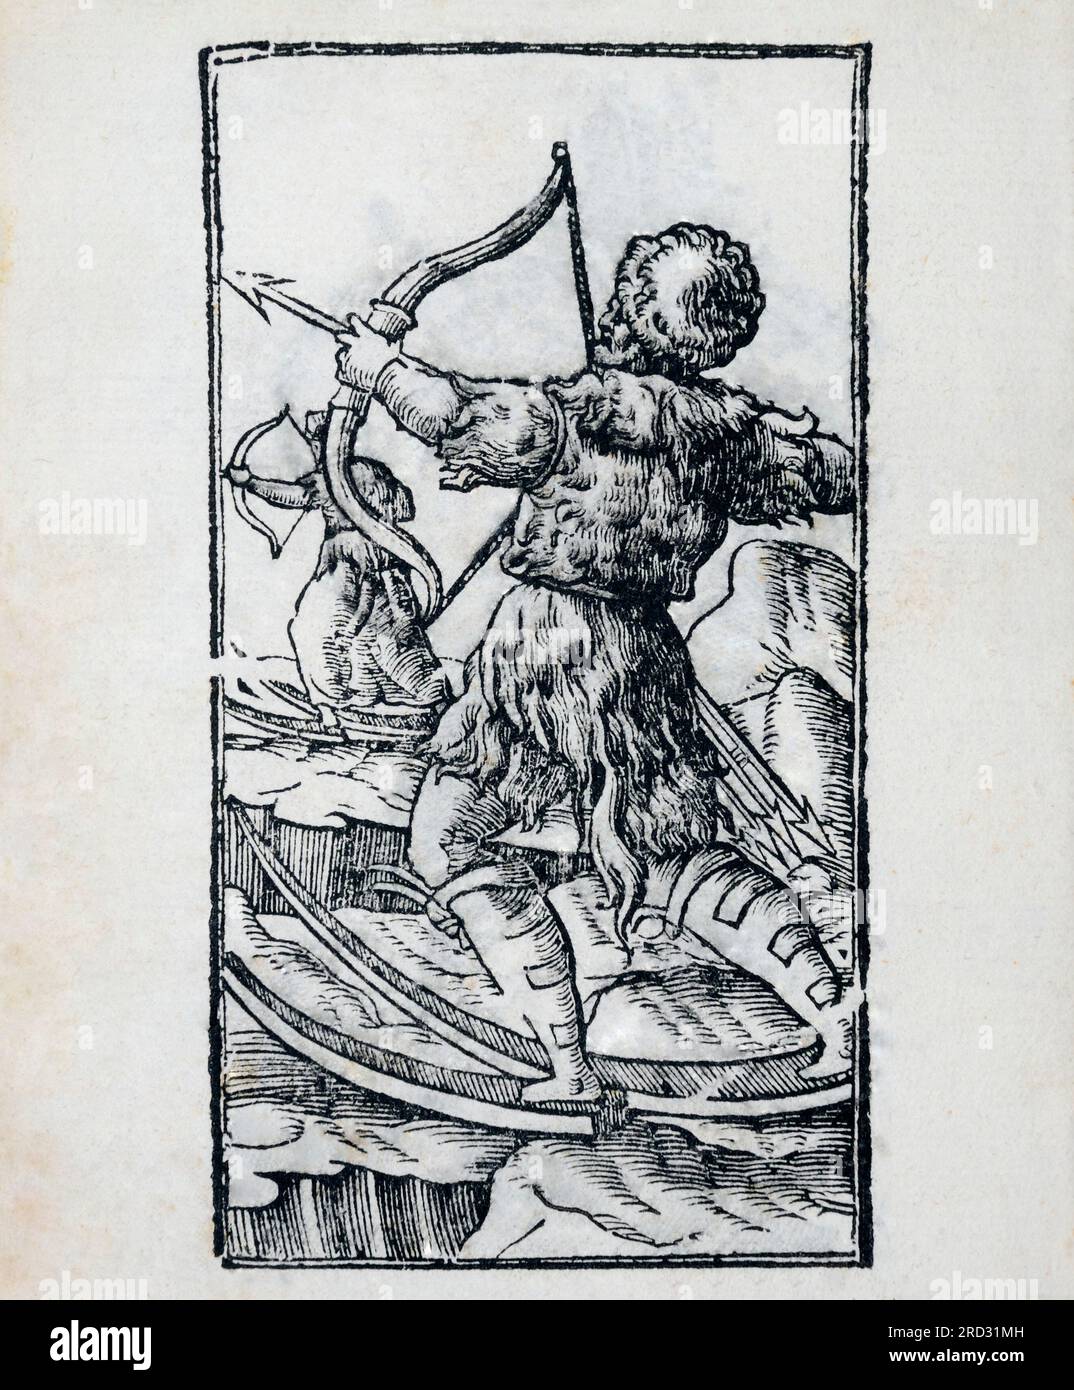 Ein Bild von Biarmen Bogenschützen, mit Bogen, Pfeilen und Skiern. Ein biarmer Mann war selbststolz, was Wikingerführer Ragnar Lodbrok bemerkte. Ra Stockfoto